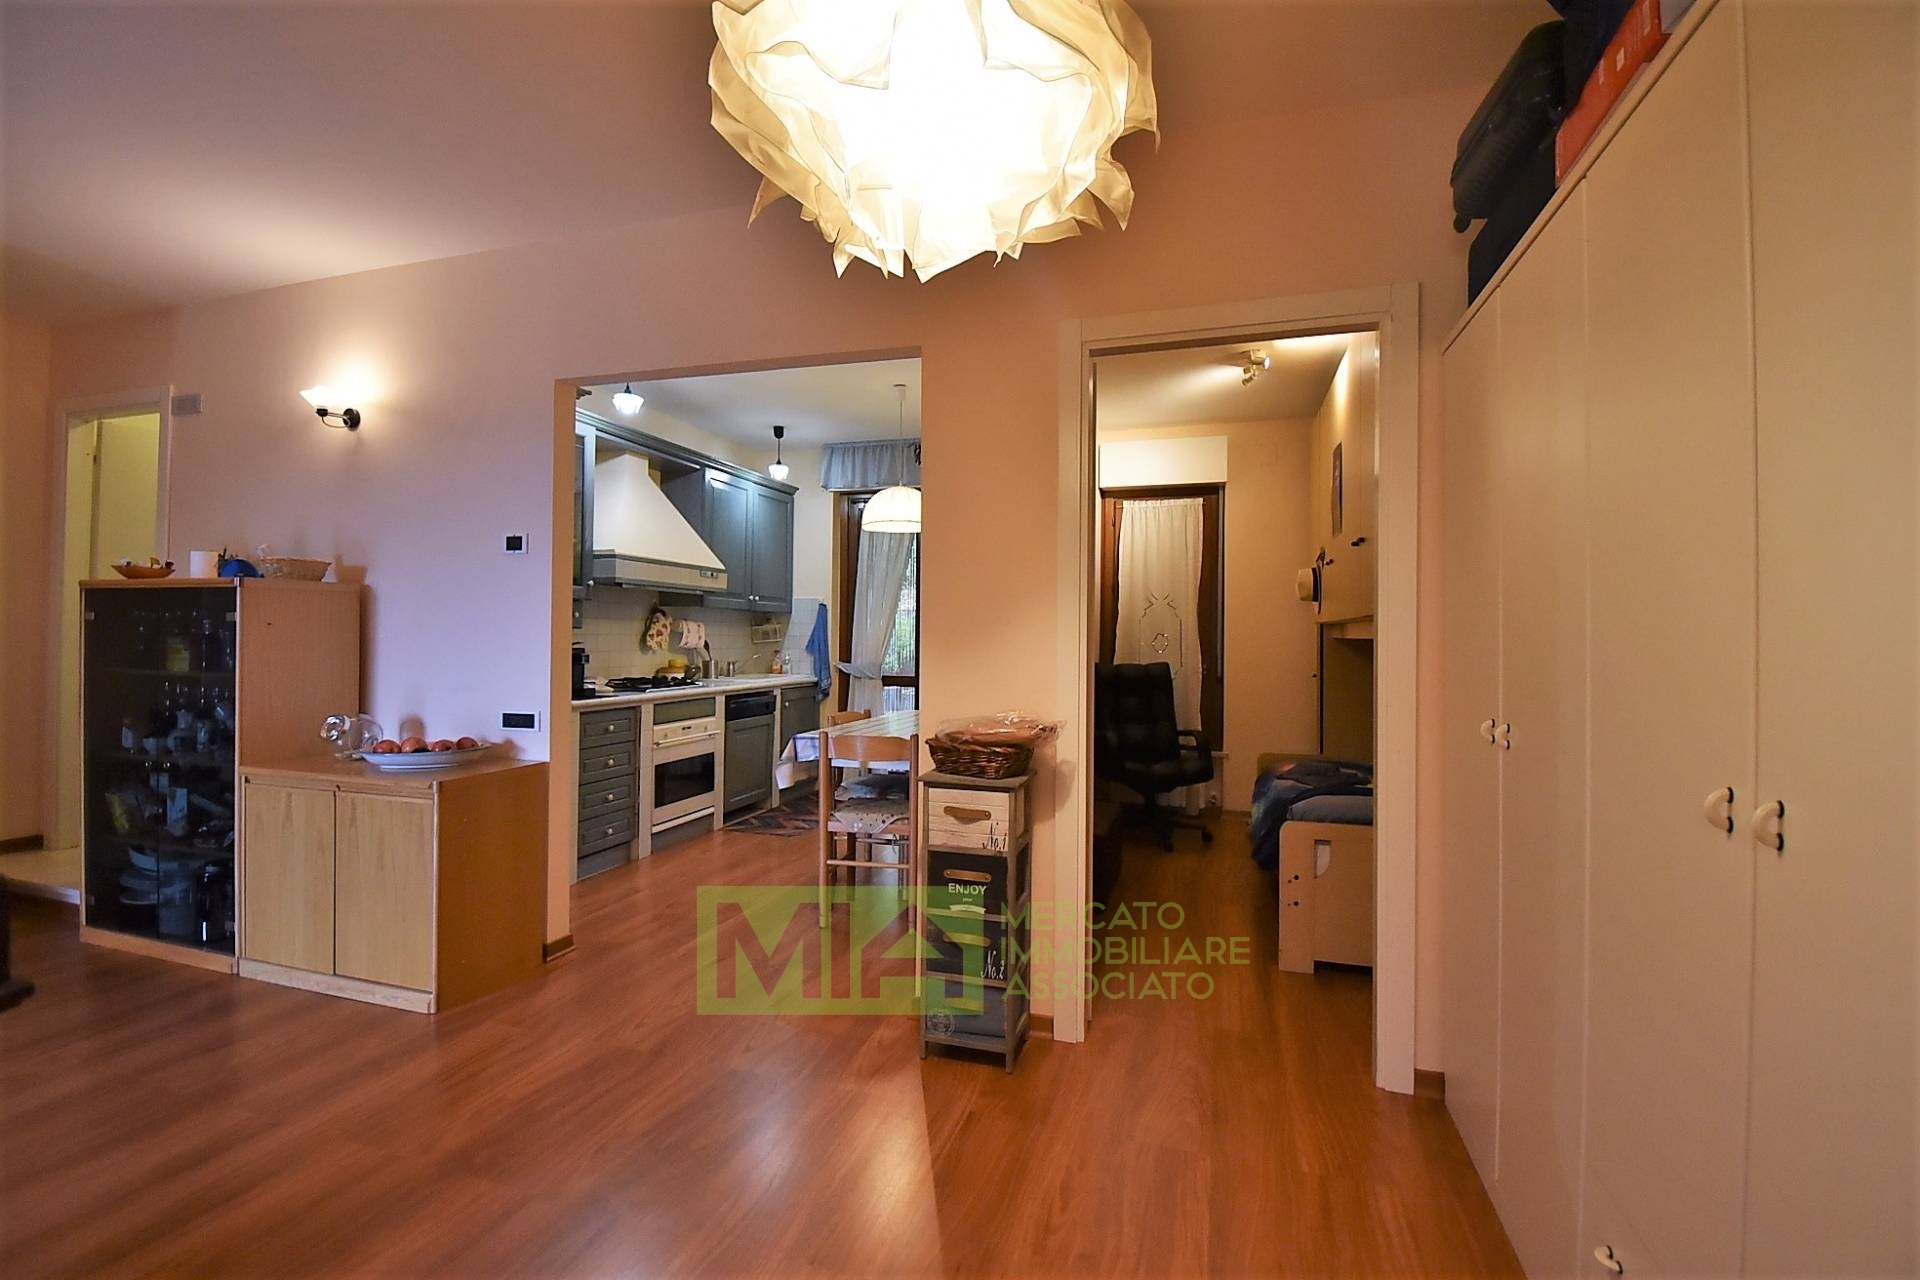 Appartamento in vendita a Sarnano, 5 locali, zona Località: Periferia, prezzo € 78.000 | PortaleAgenzieImmobiliari.it